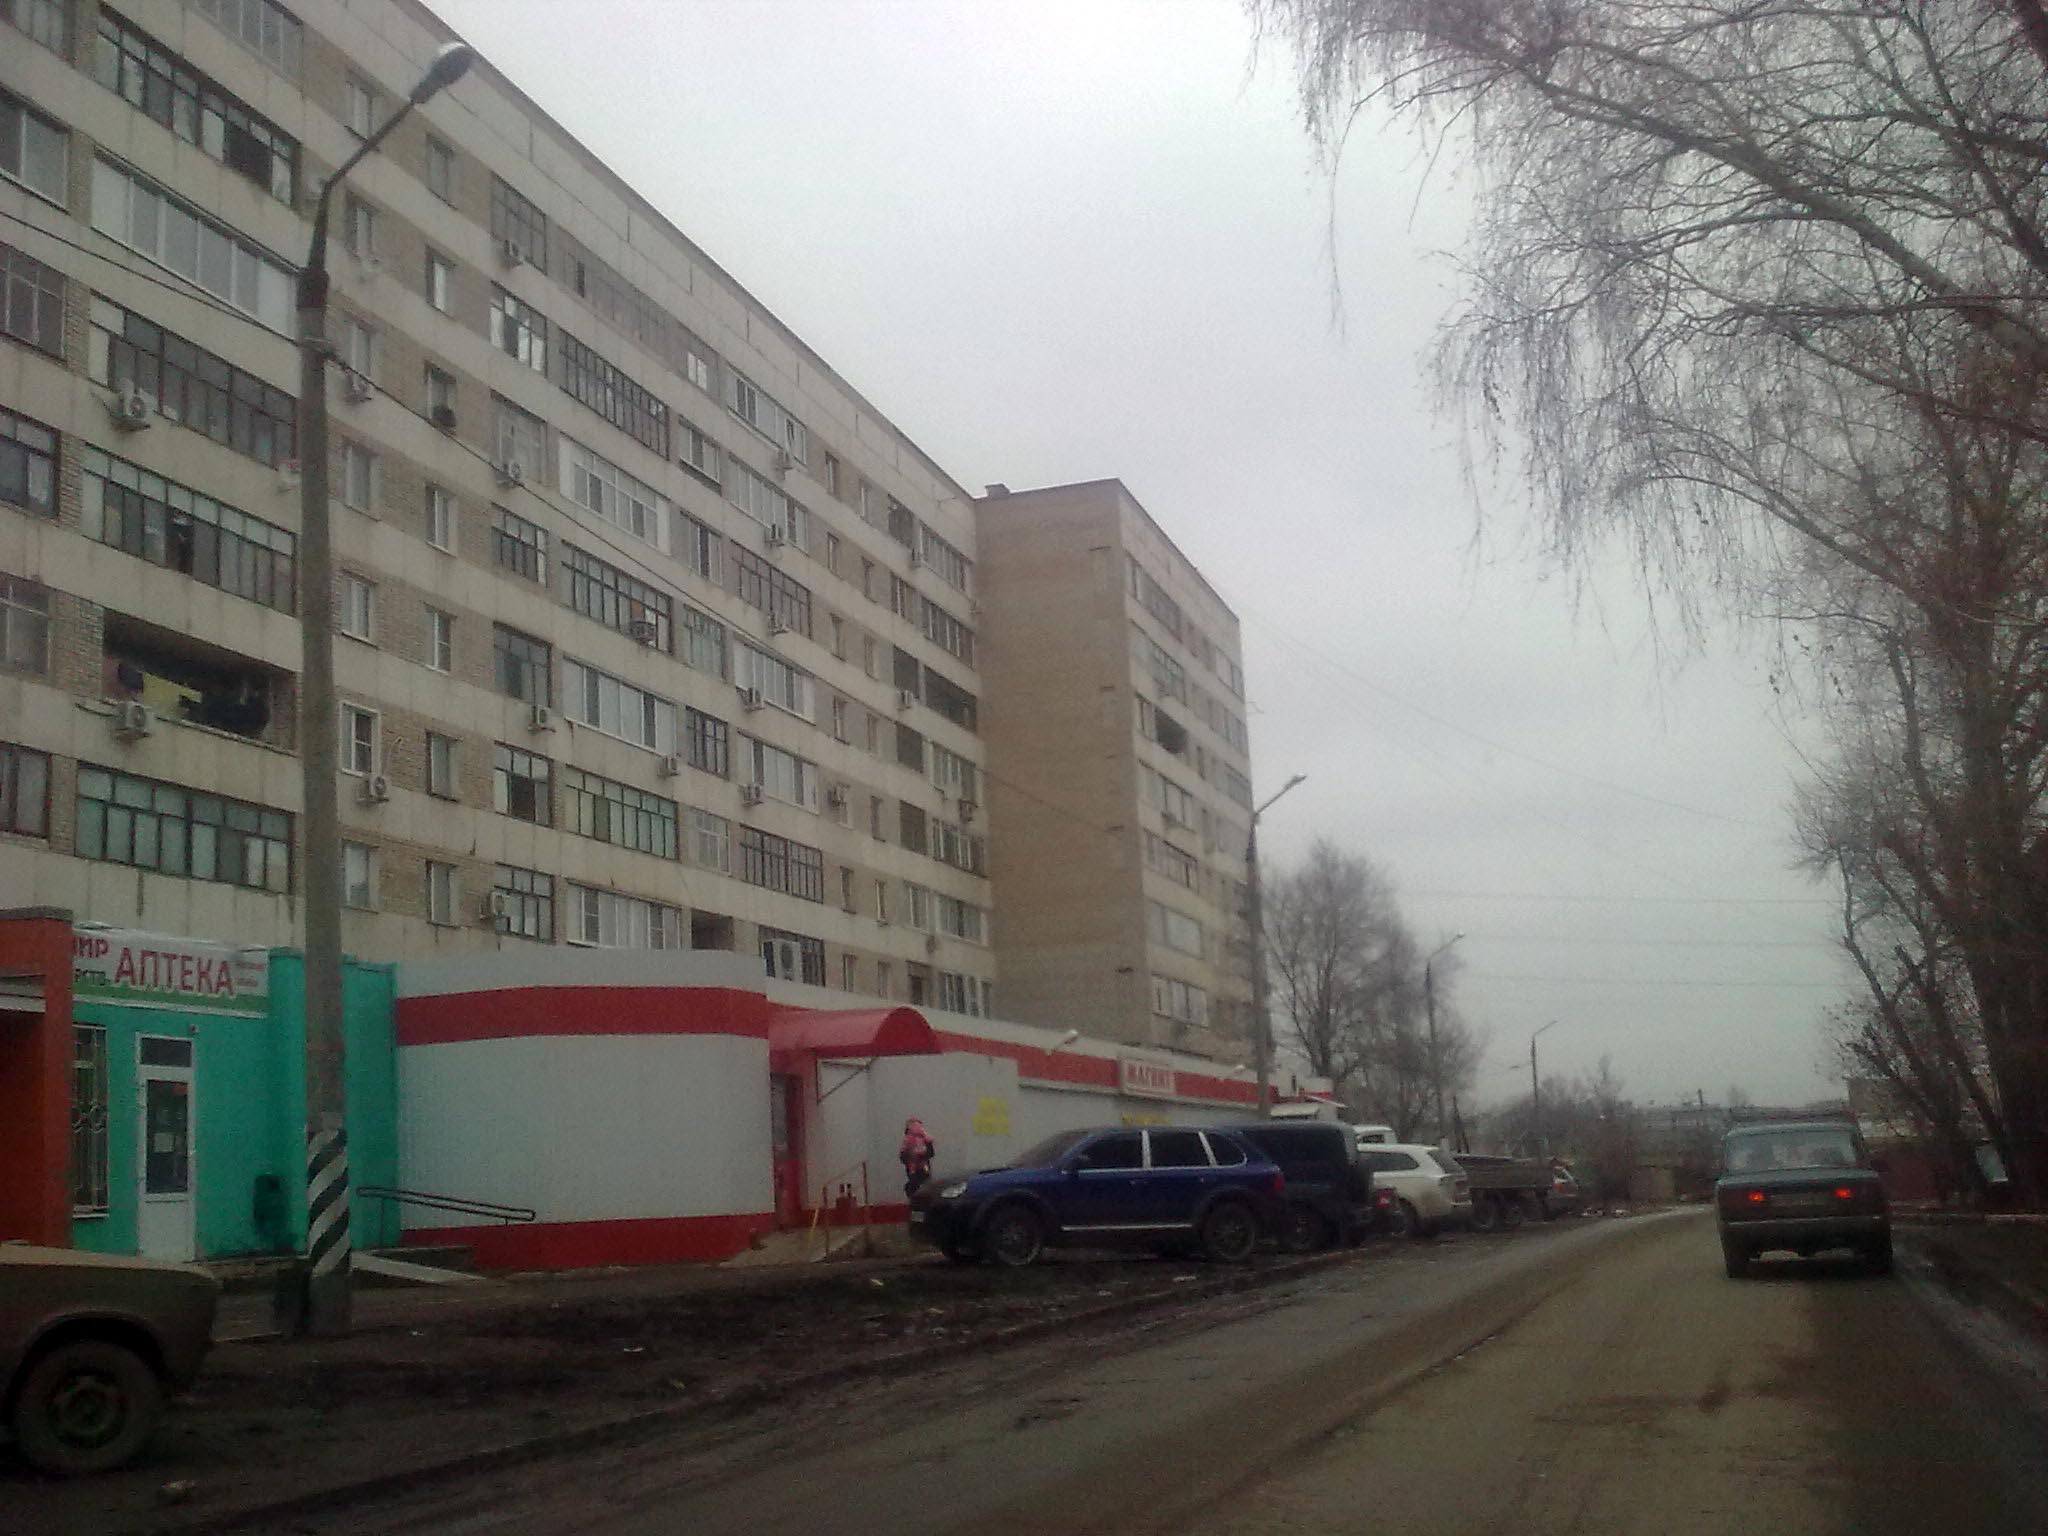 Улица саратовская 13